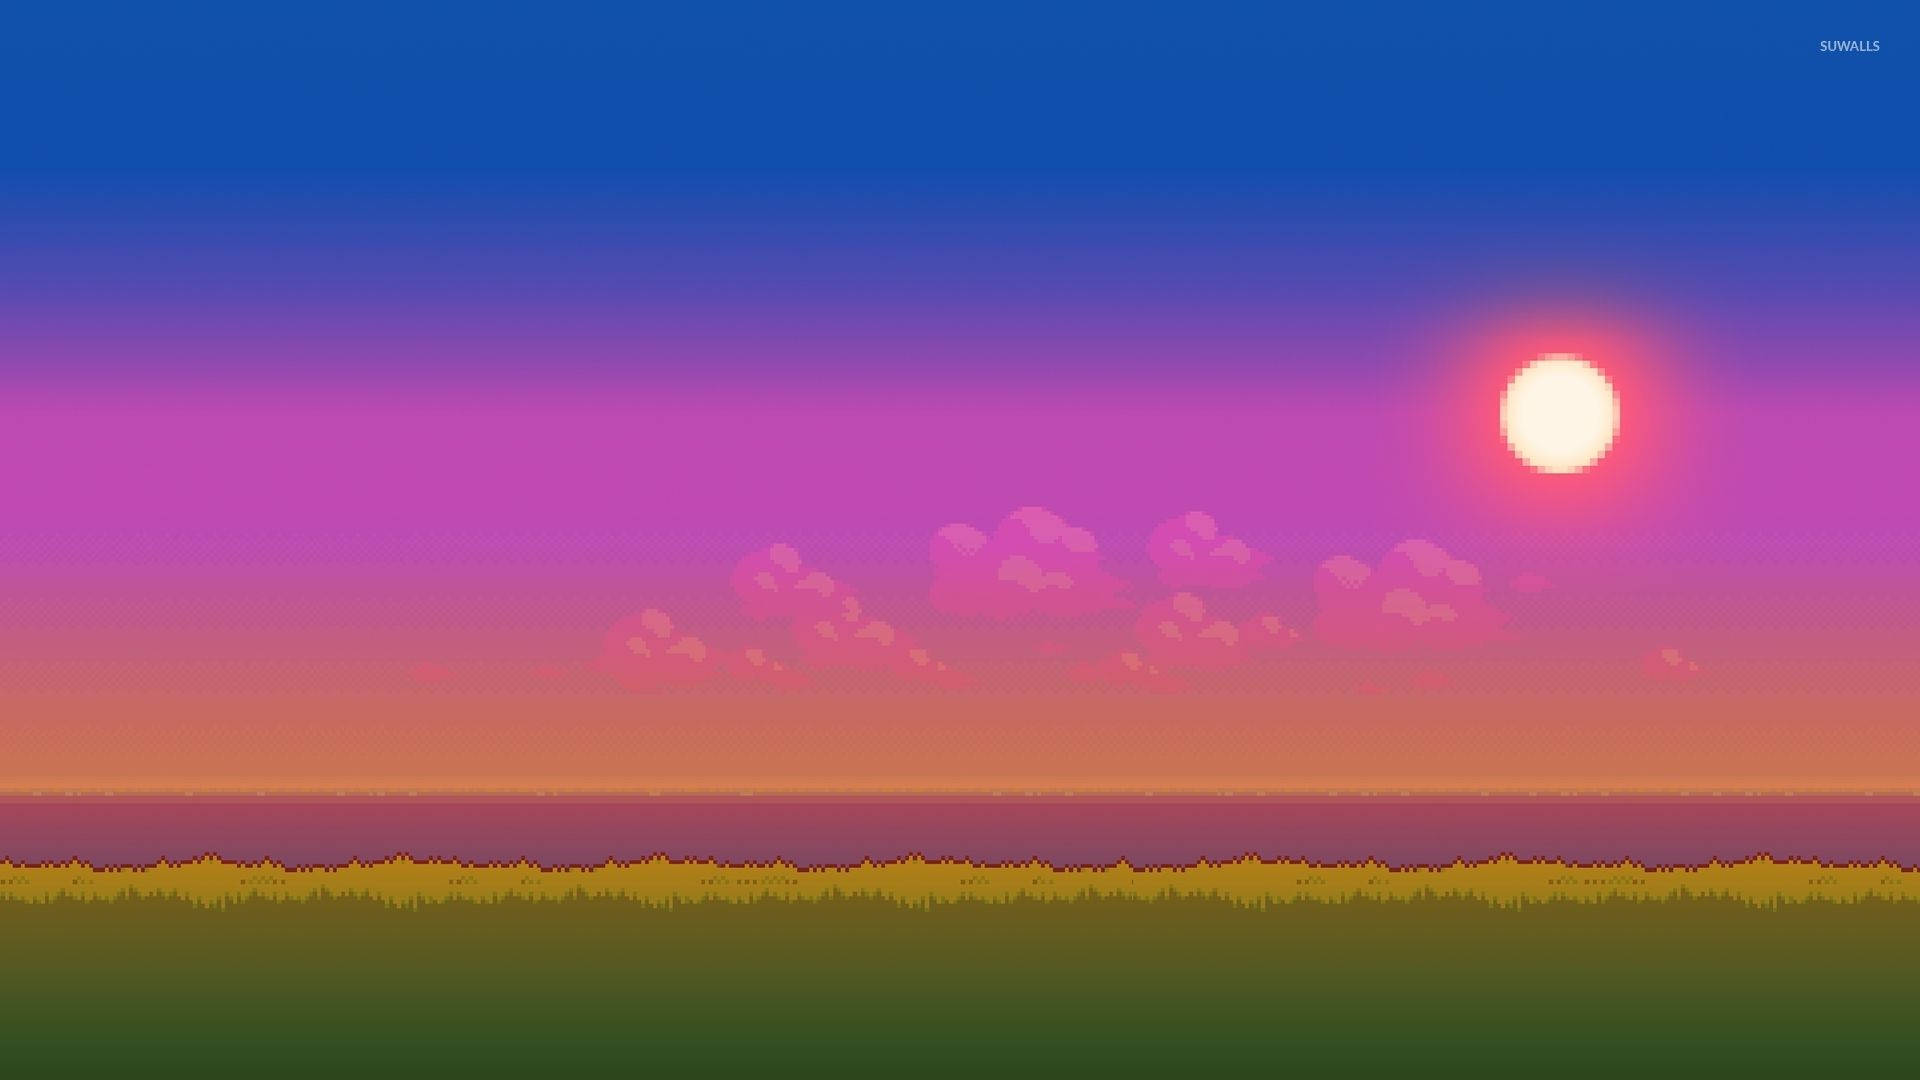 Colorful Sky 8 Bit Wallpaper